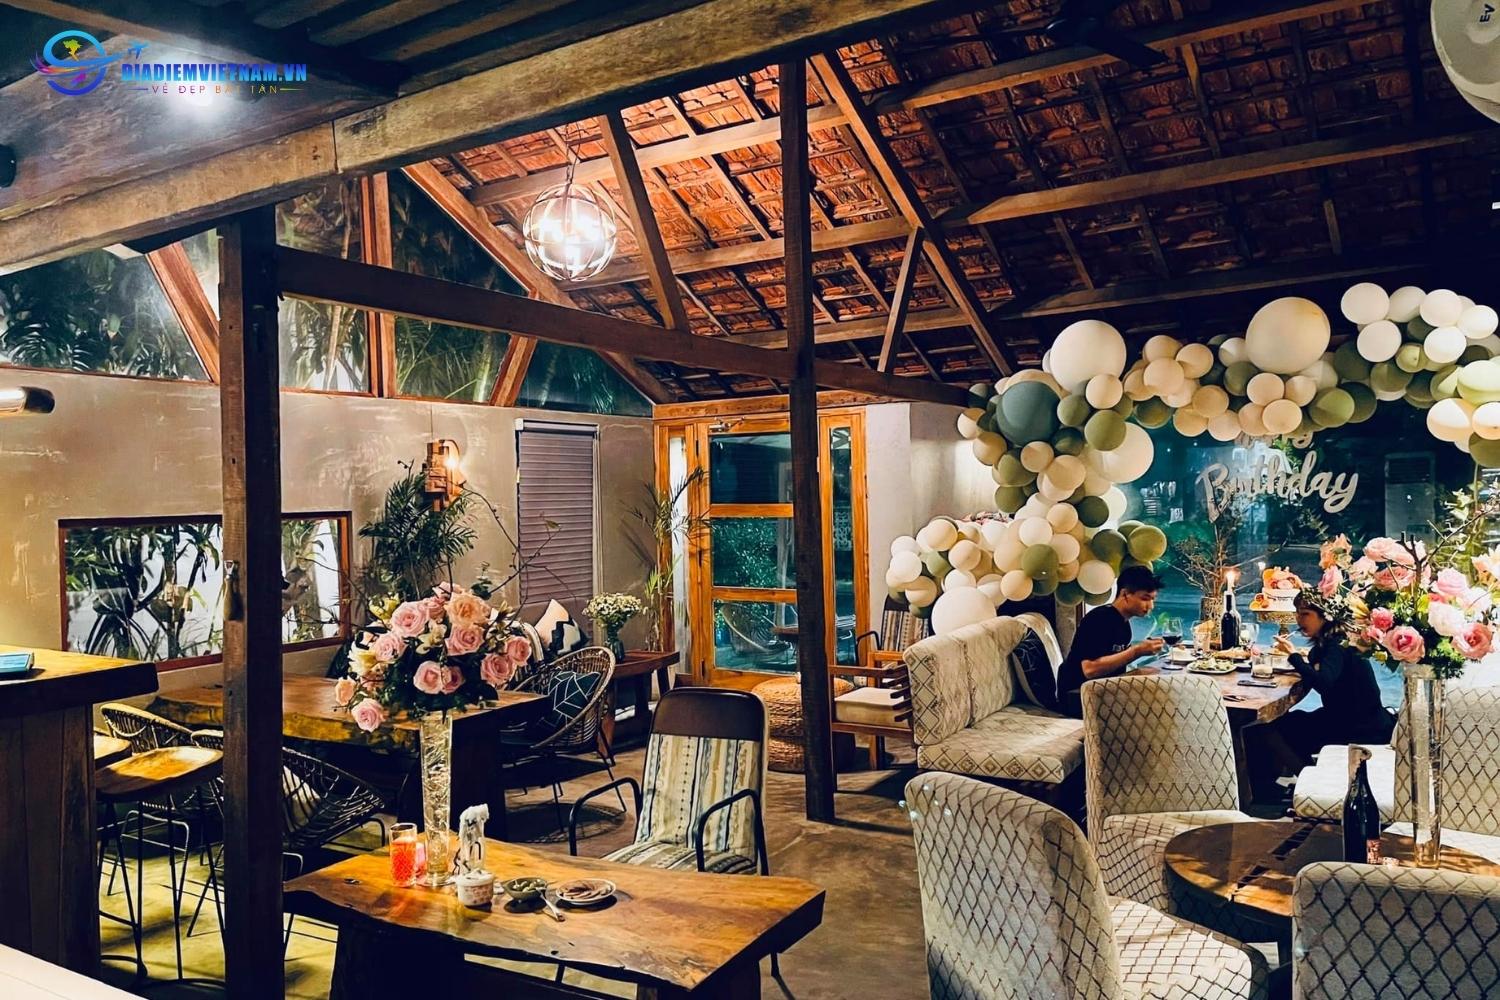 The Winter Pub Phú Yên